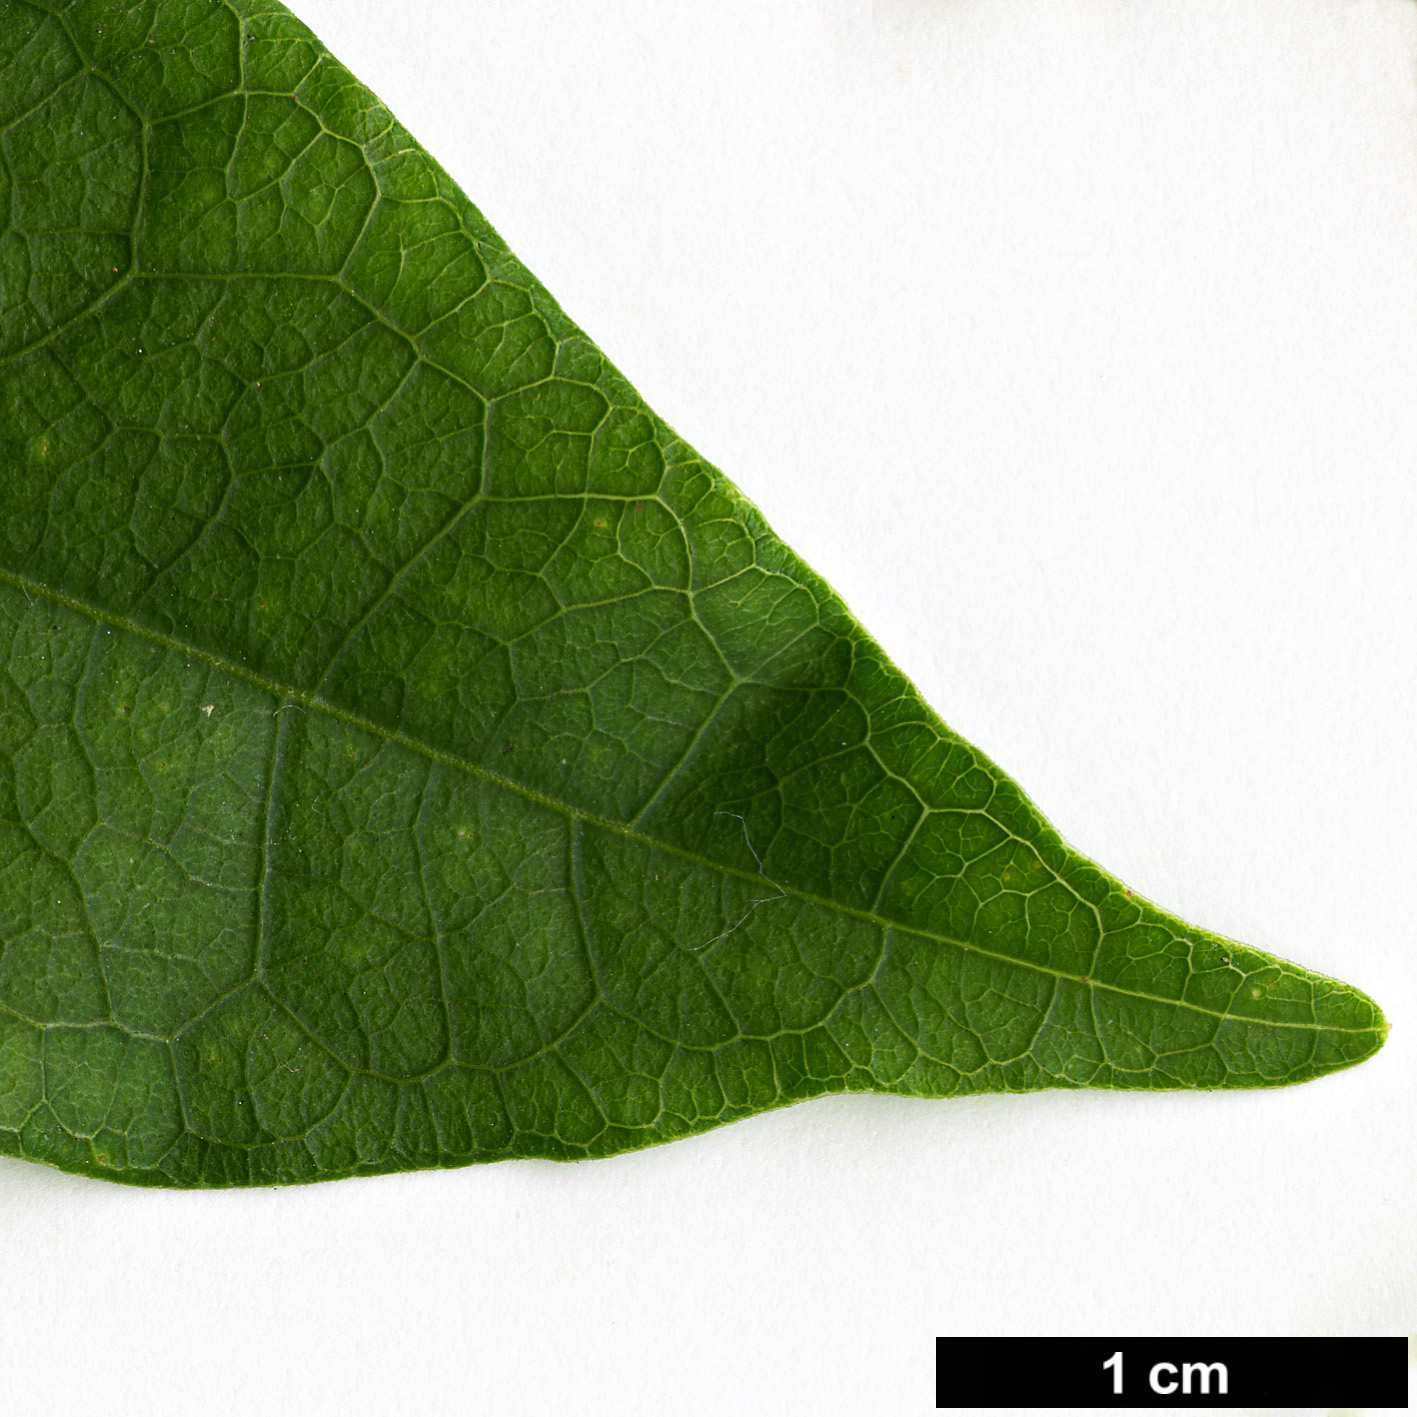 High resolution image: Family: Bignoniaceae - Genus: Bignonia - Taxon: capreolata